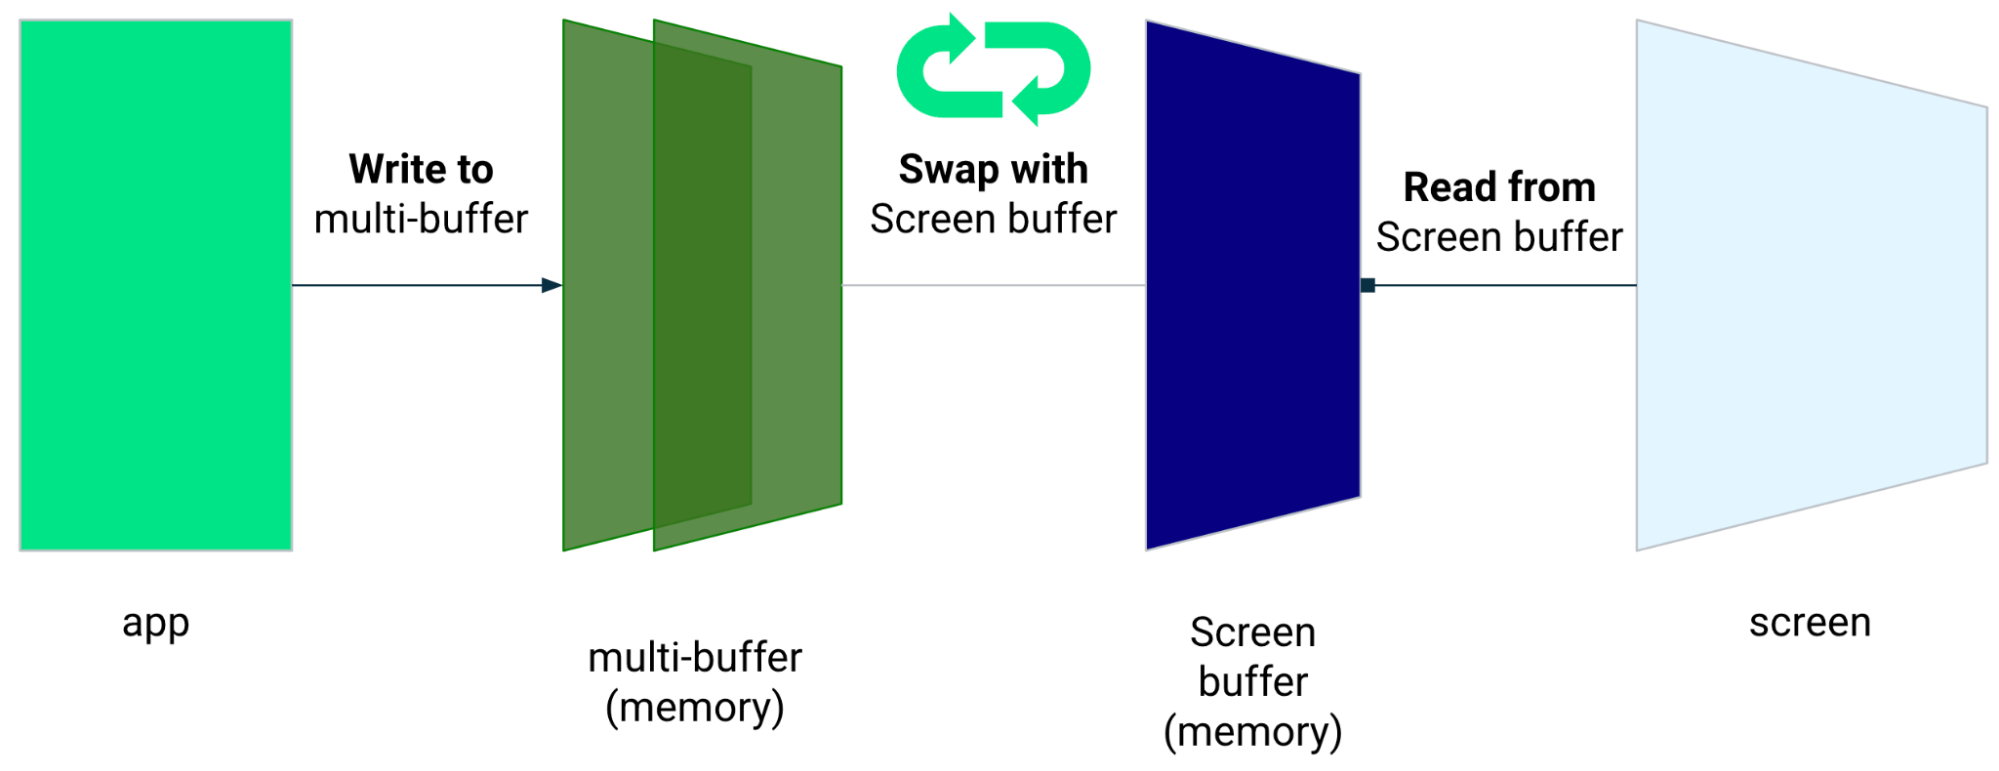 O app escreve no buffer múltiplo, e troca pelo buffer de tela. O app lê diretamente do buffer da tela.